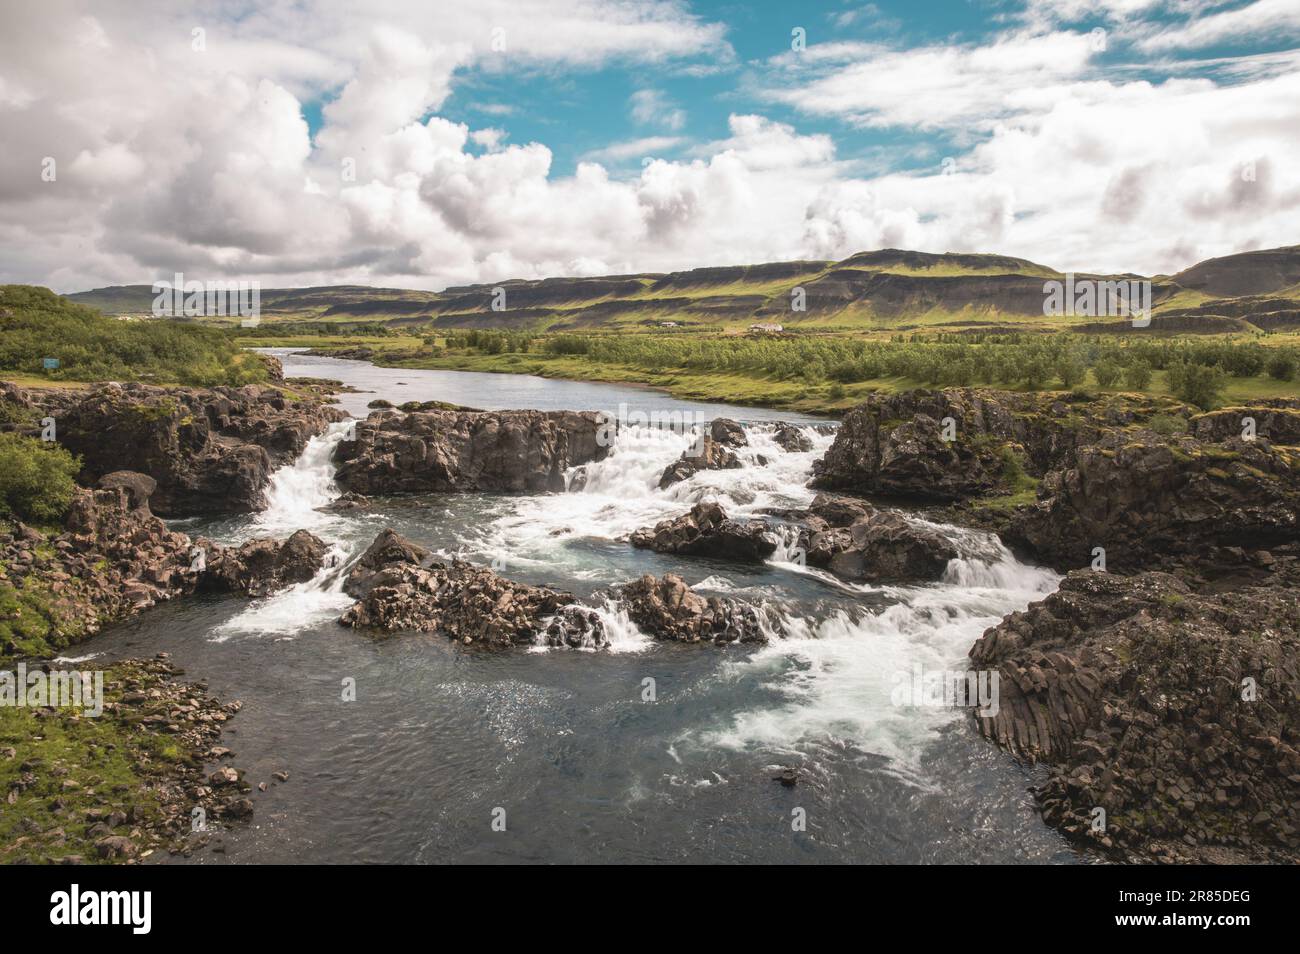 Isländische herrliche Hraunfossar-Wasserfälle und blaues wasser Stockfoto